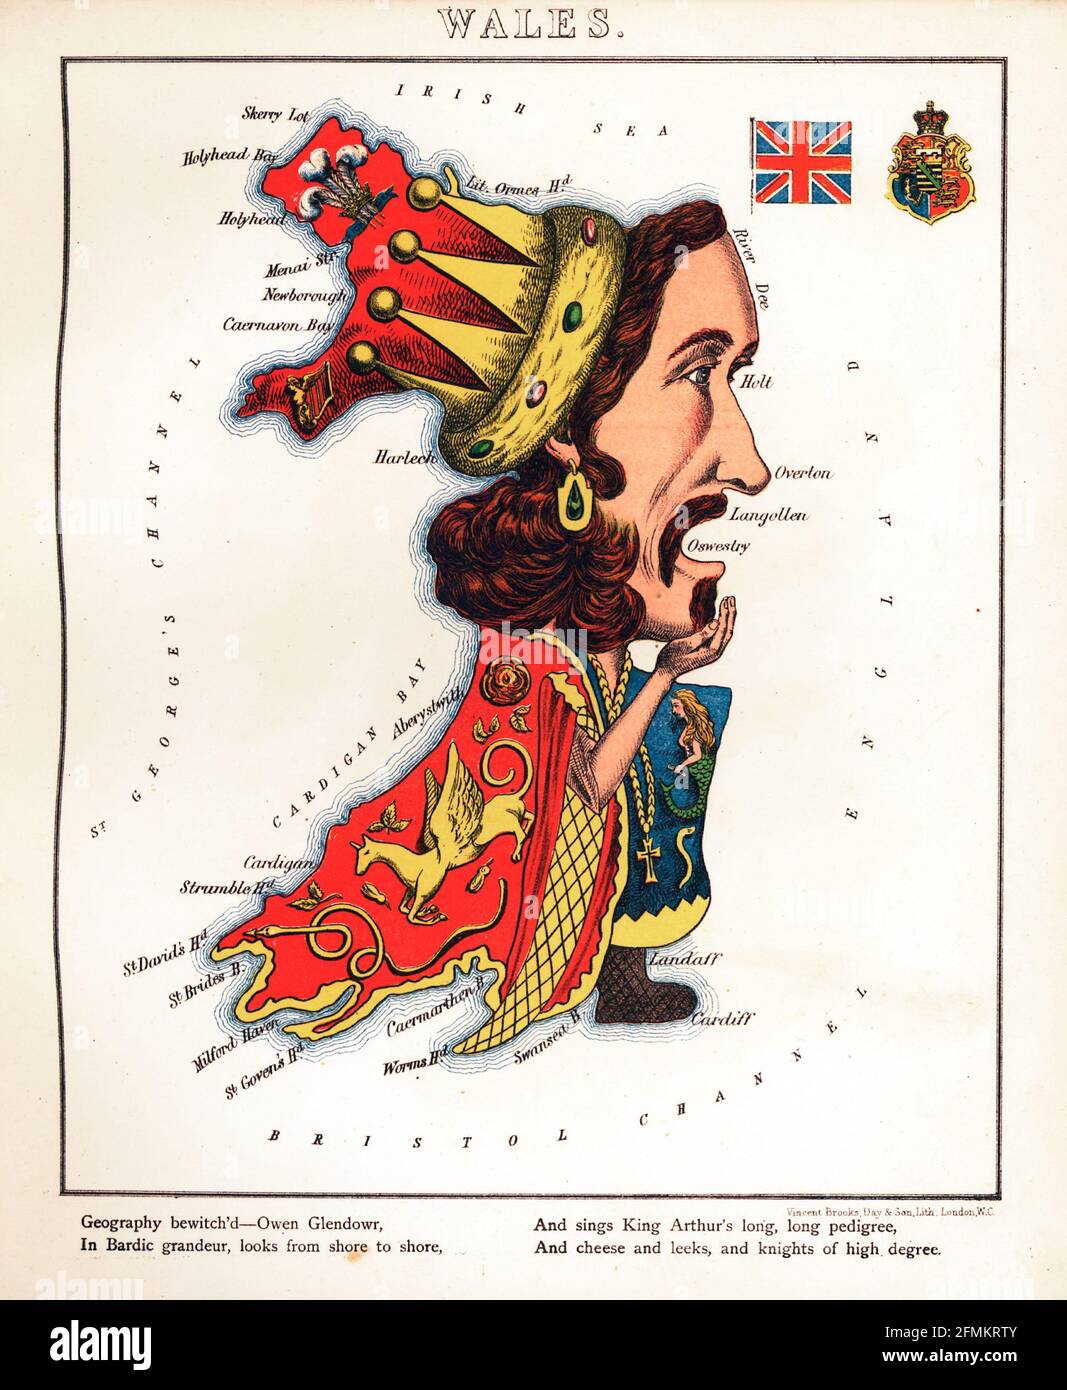 Galles – divertimento geografico. Mappa satirica / cartografica illustrata. Pubblicato a Londra dalla ditta di Hodder e Stoughton nel 1869. Foto Stock